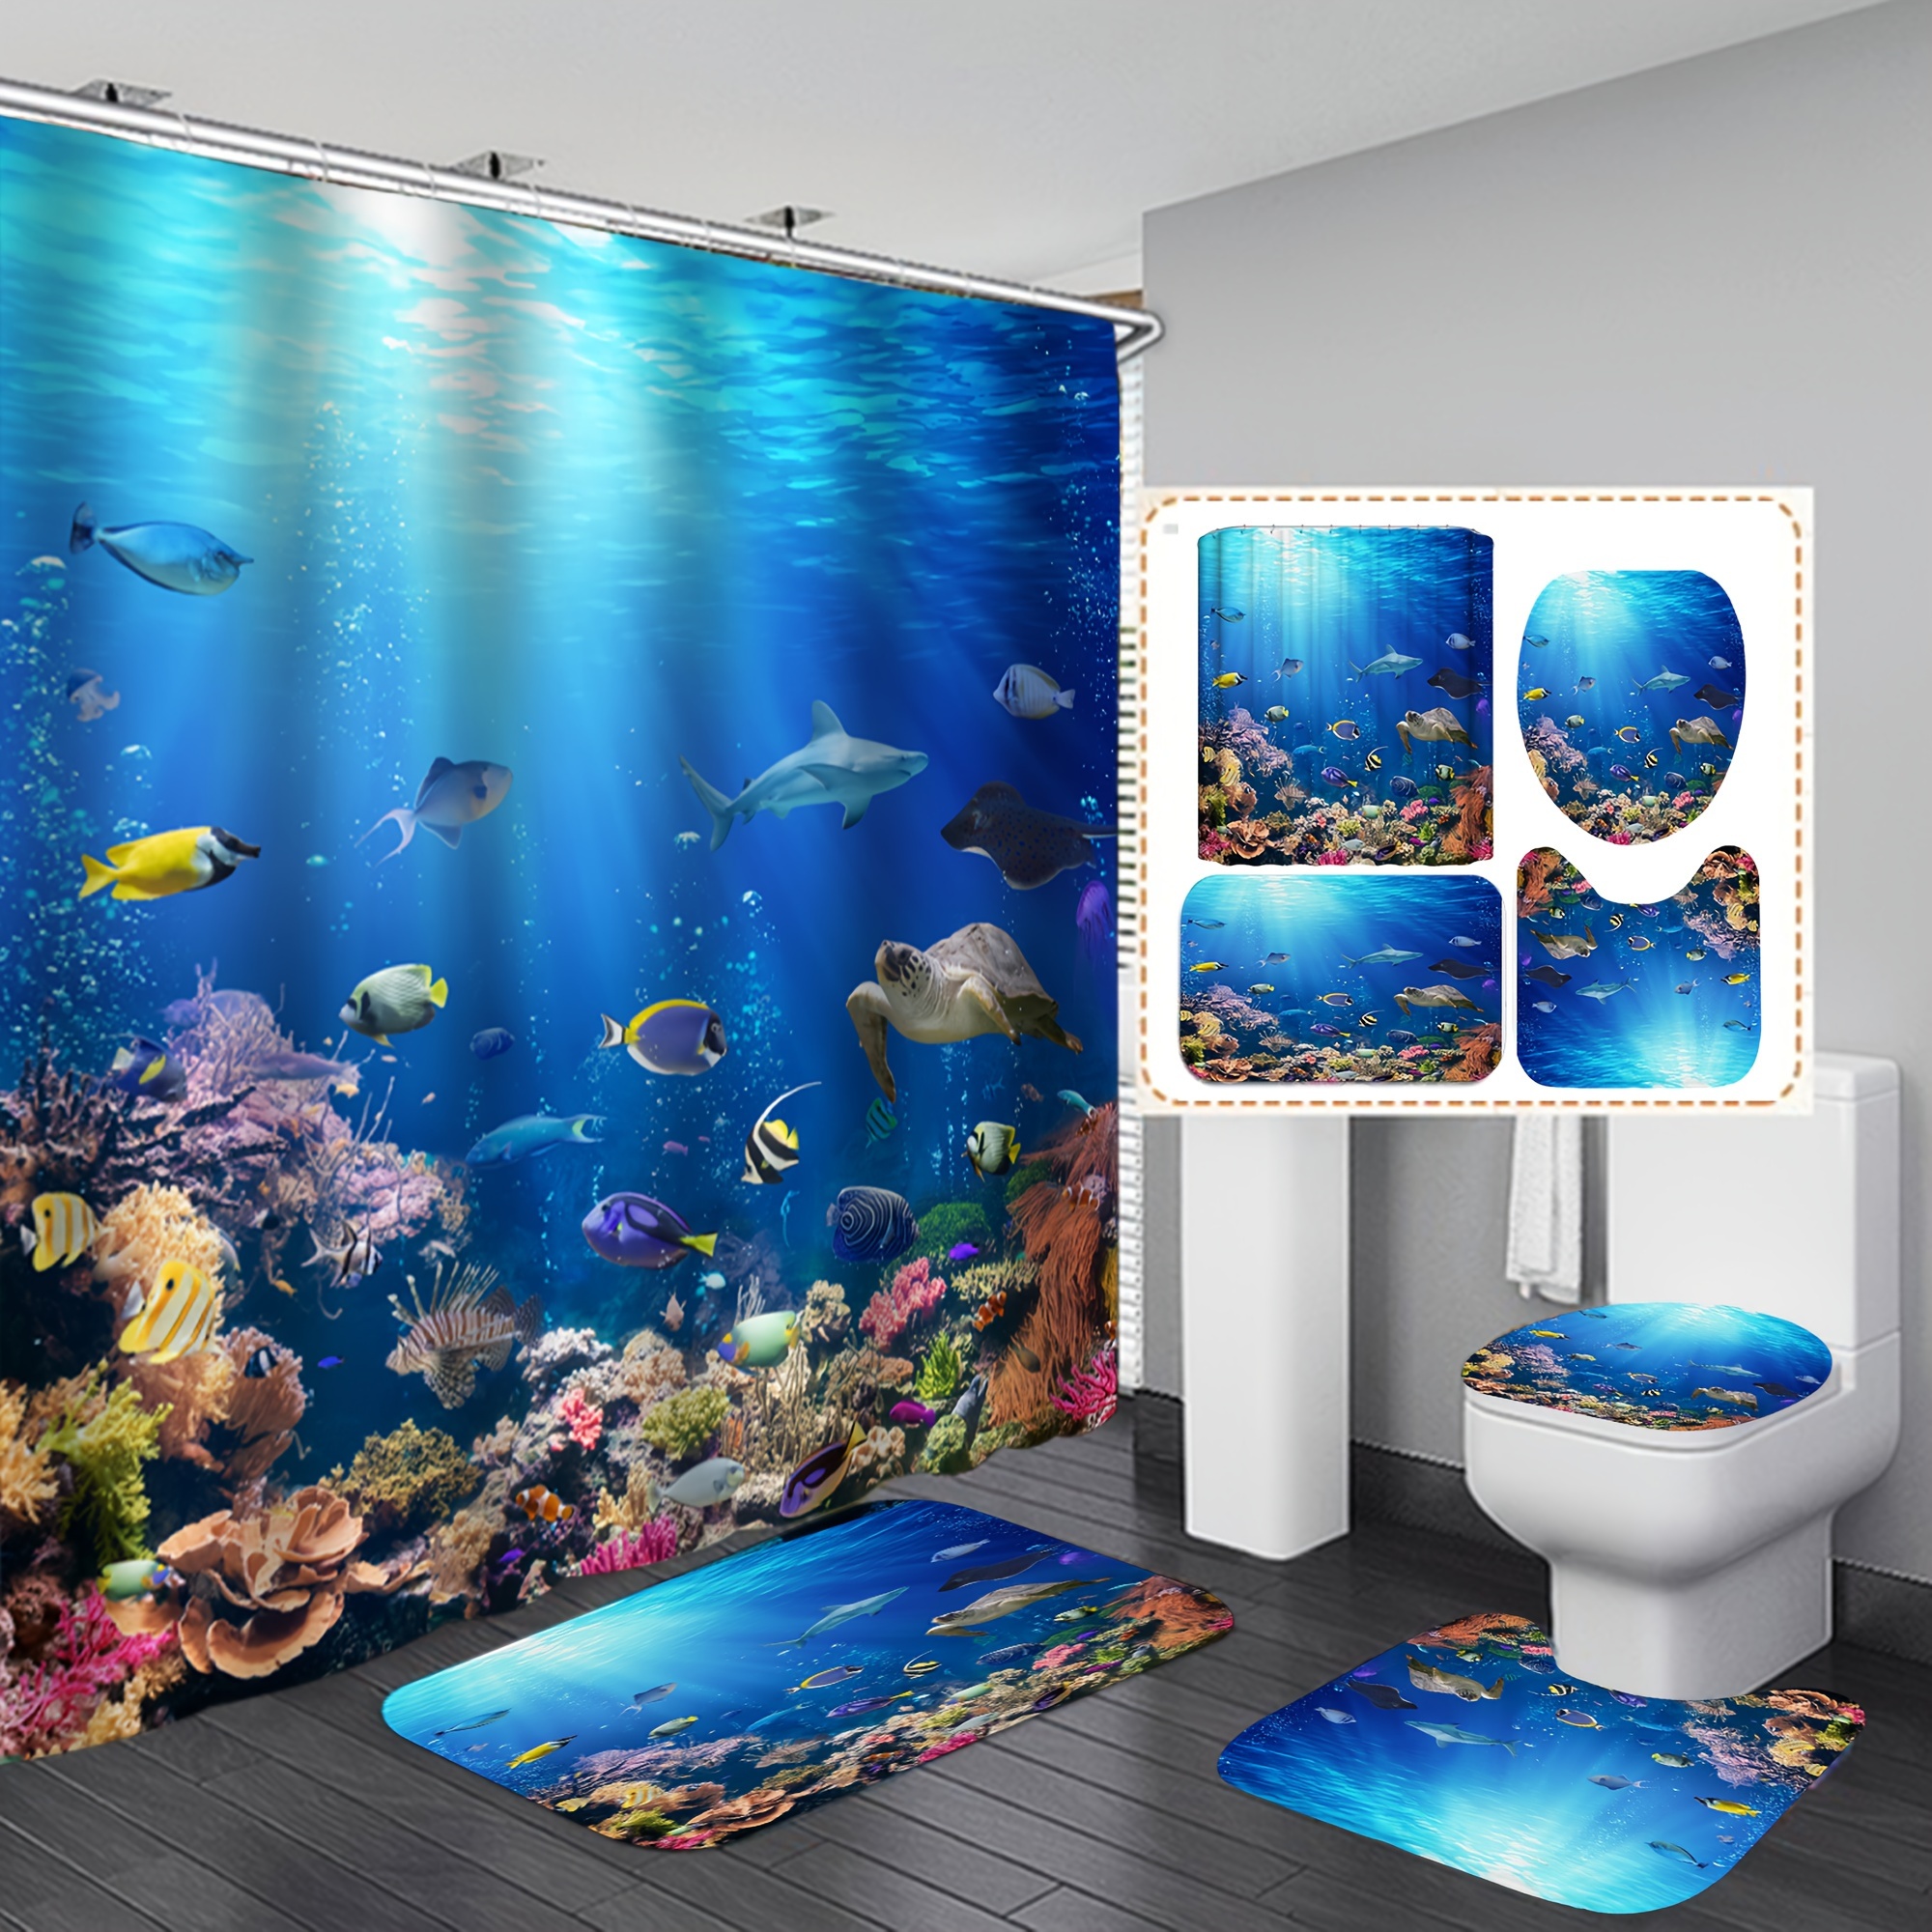 Divertida cortina de ducha de tela de gato para baño, diseño de animales  marinos, pulpo, estrella de mar, tortuga, ancla náutica, peces, juego de